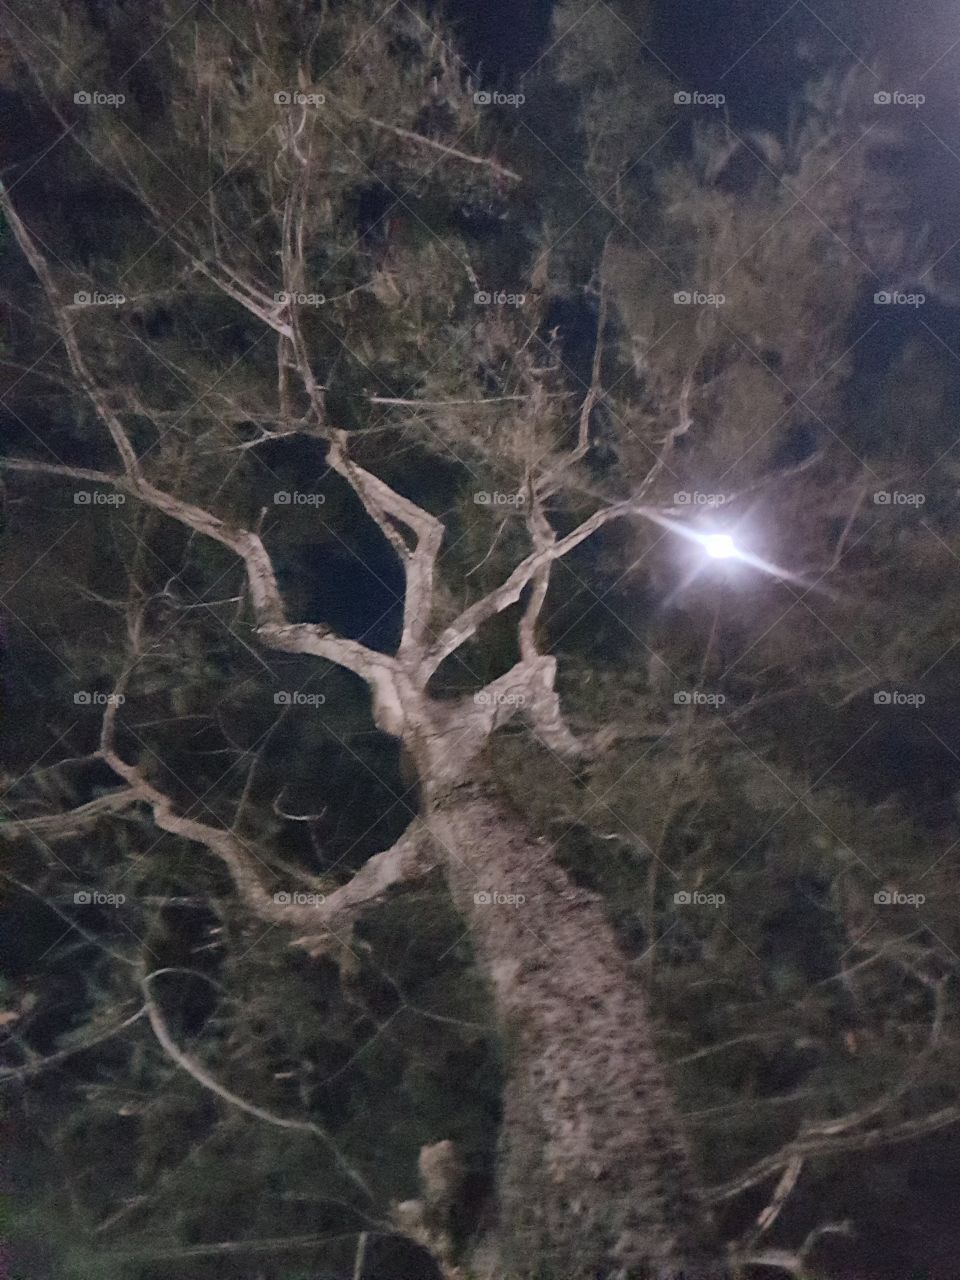 tree moon